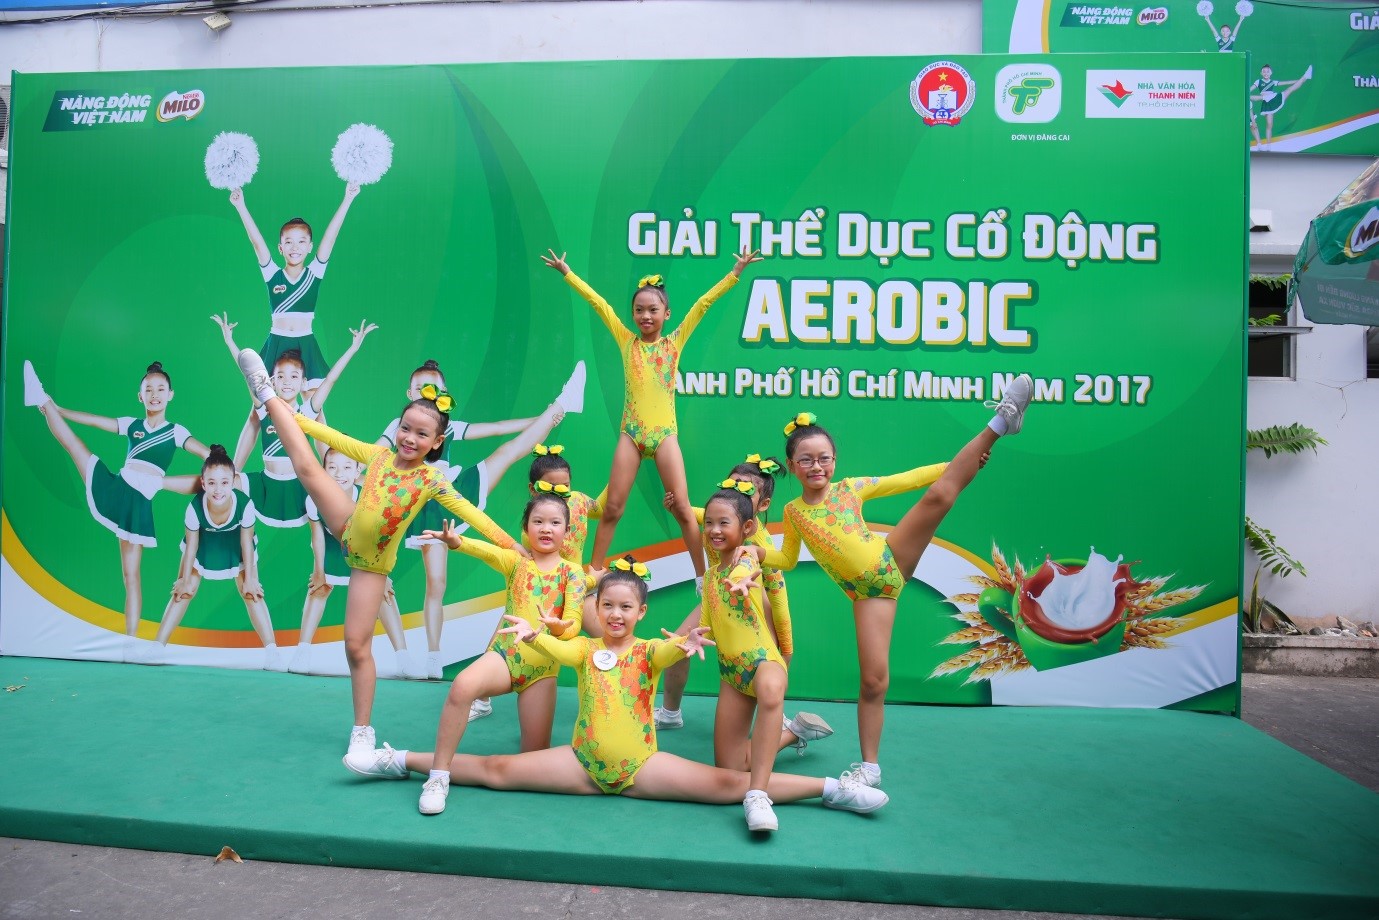 Các vận động viên trổ tài trong Lễ khai mạc Giải thể dục cổ động Aerobics  TP.HCM tranh cúp MILO lần I - 2017